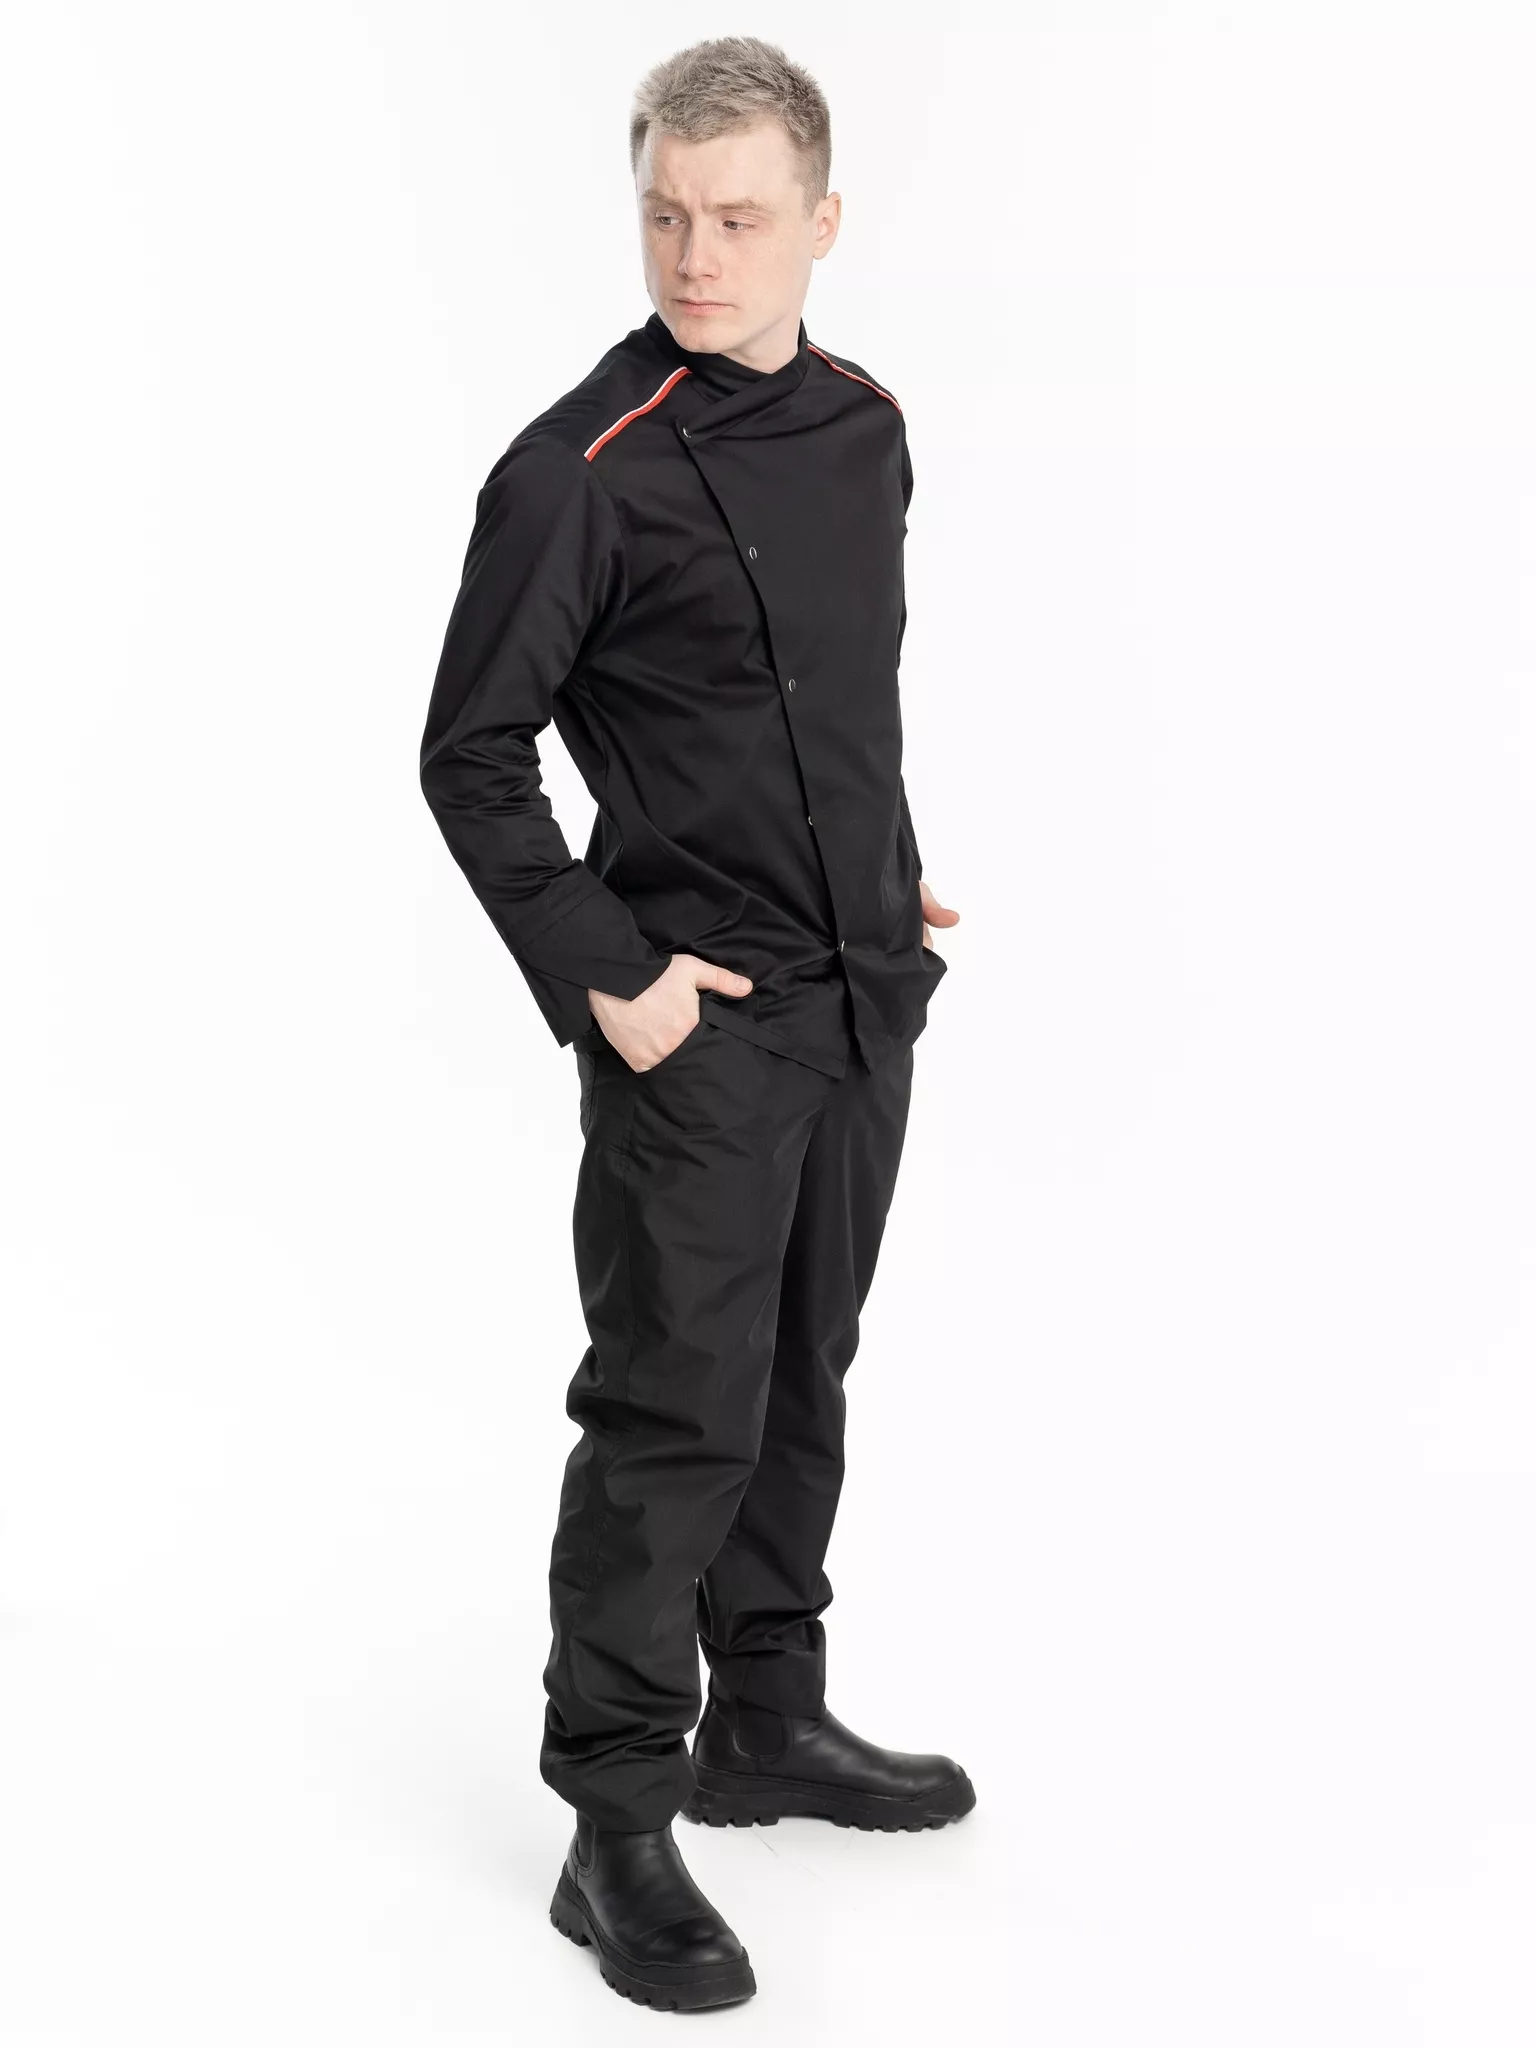 Куртка мужская КМ.590 р.60-62, рост 170-176 (цвет черный, кант красный, белый)